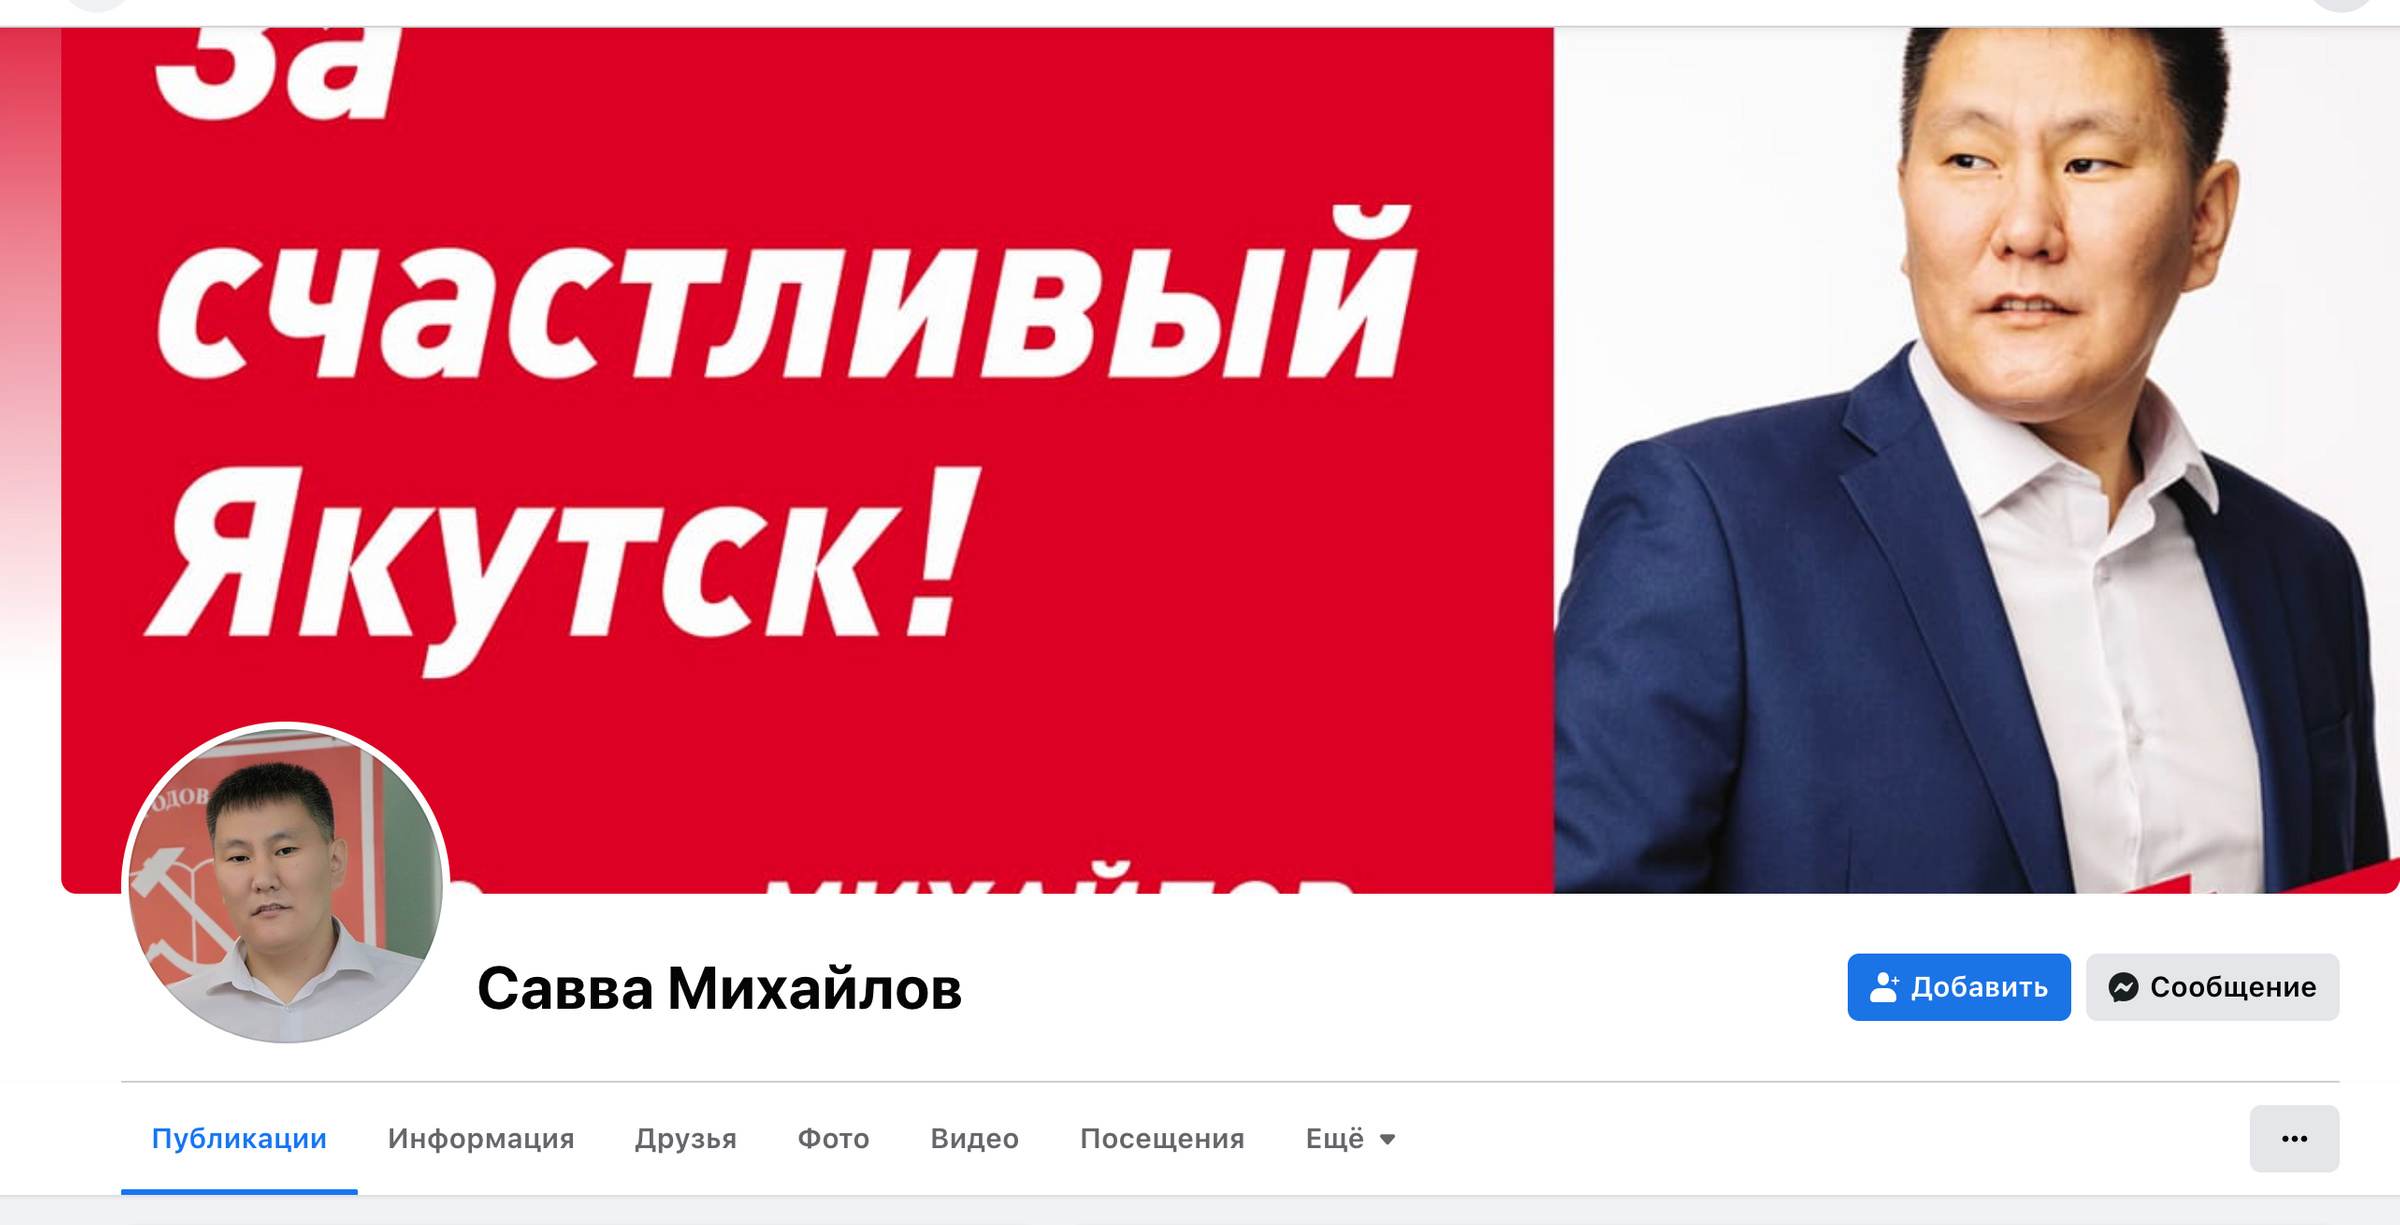 До недавнего времени Савва Михайлов был активным пользователем соцсетей. Фото © Facebook (признан экстремистской организацией и запрещён на территории Российской Федерации) / savvasakha